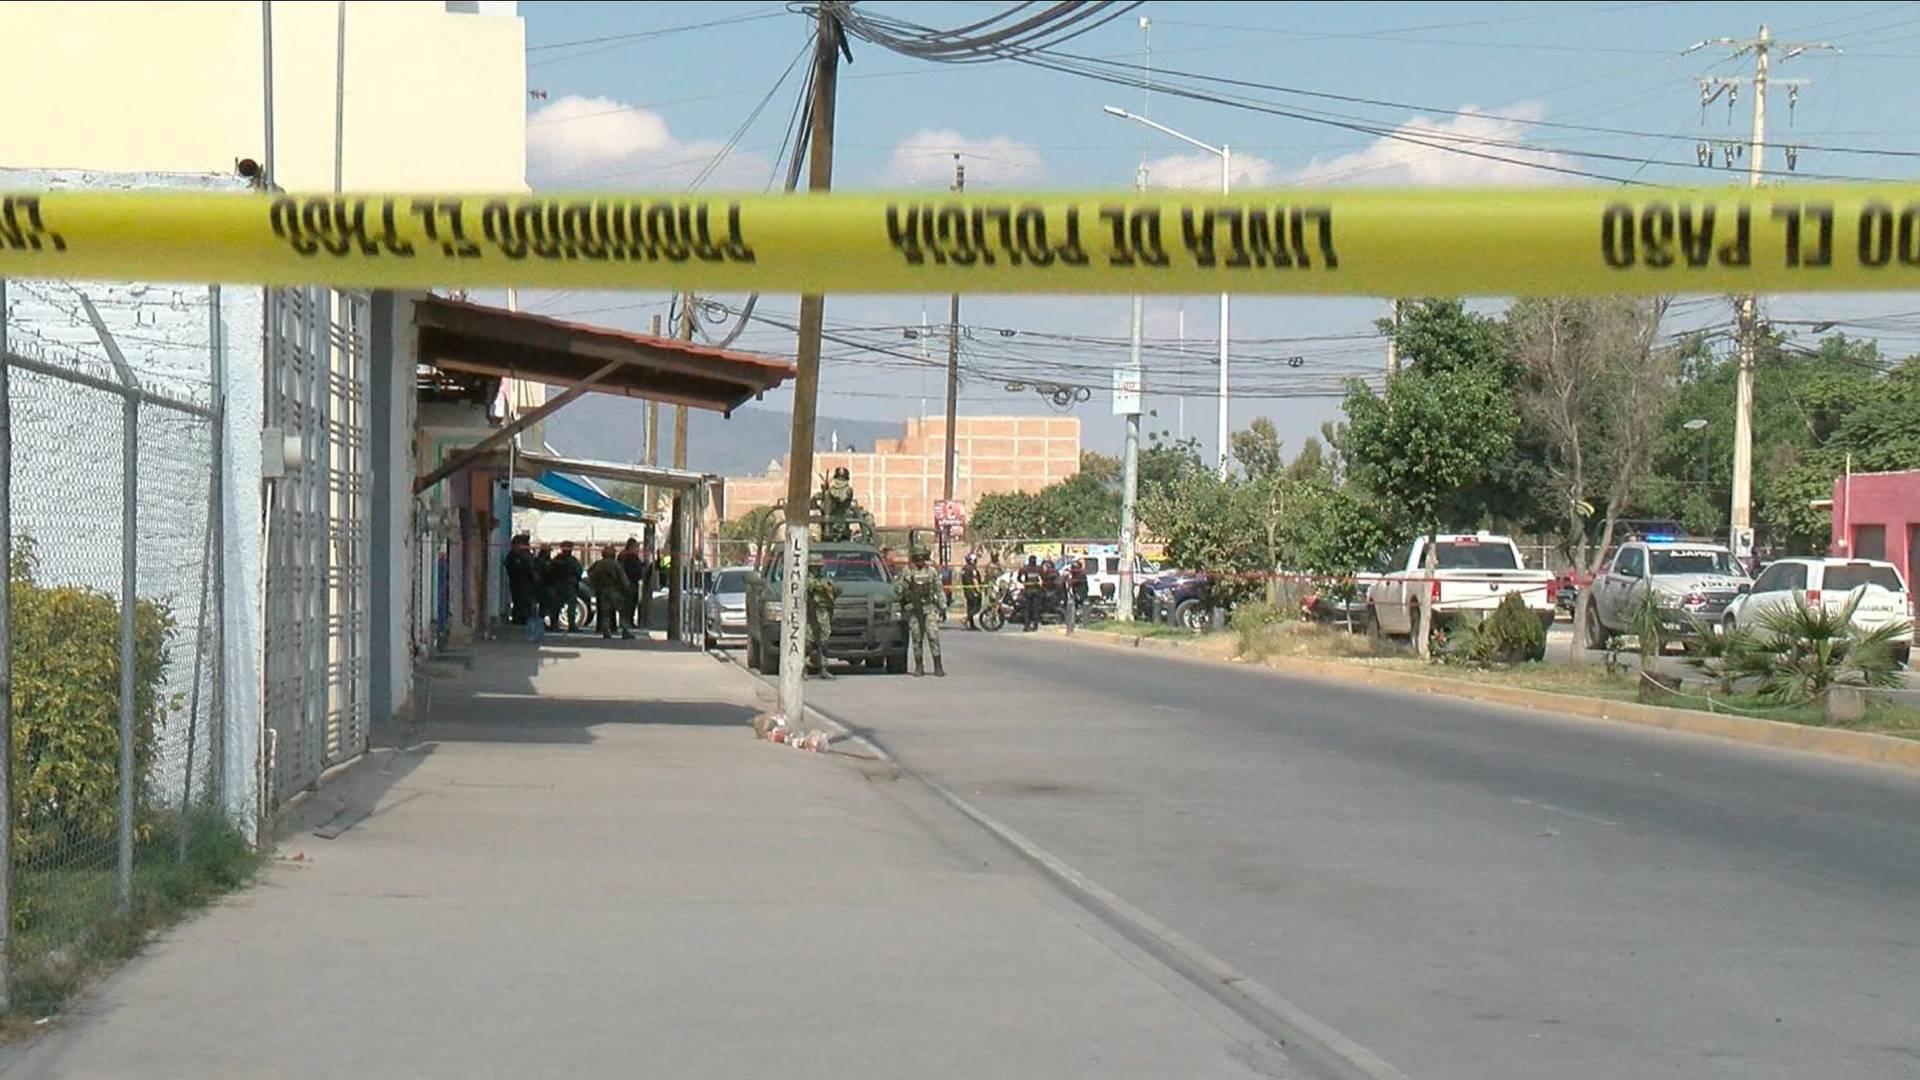 Son 9 los Detenidos en Tonalá por Desaparición de Personas